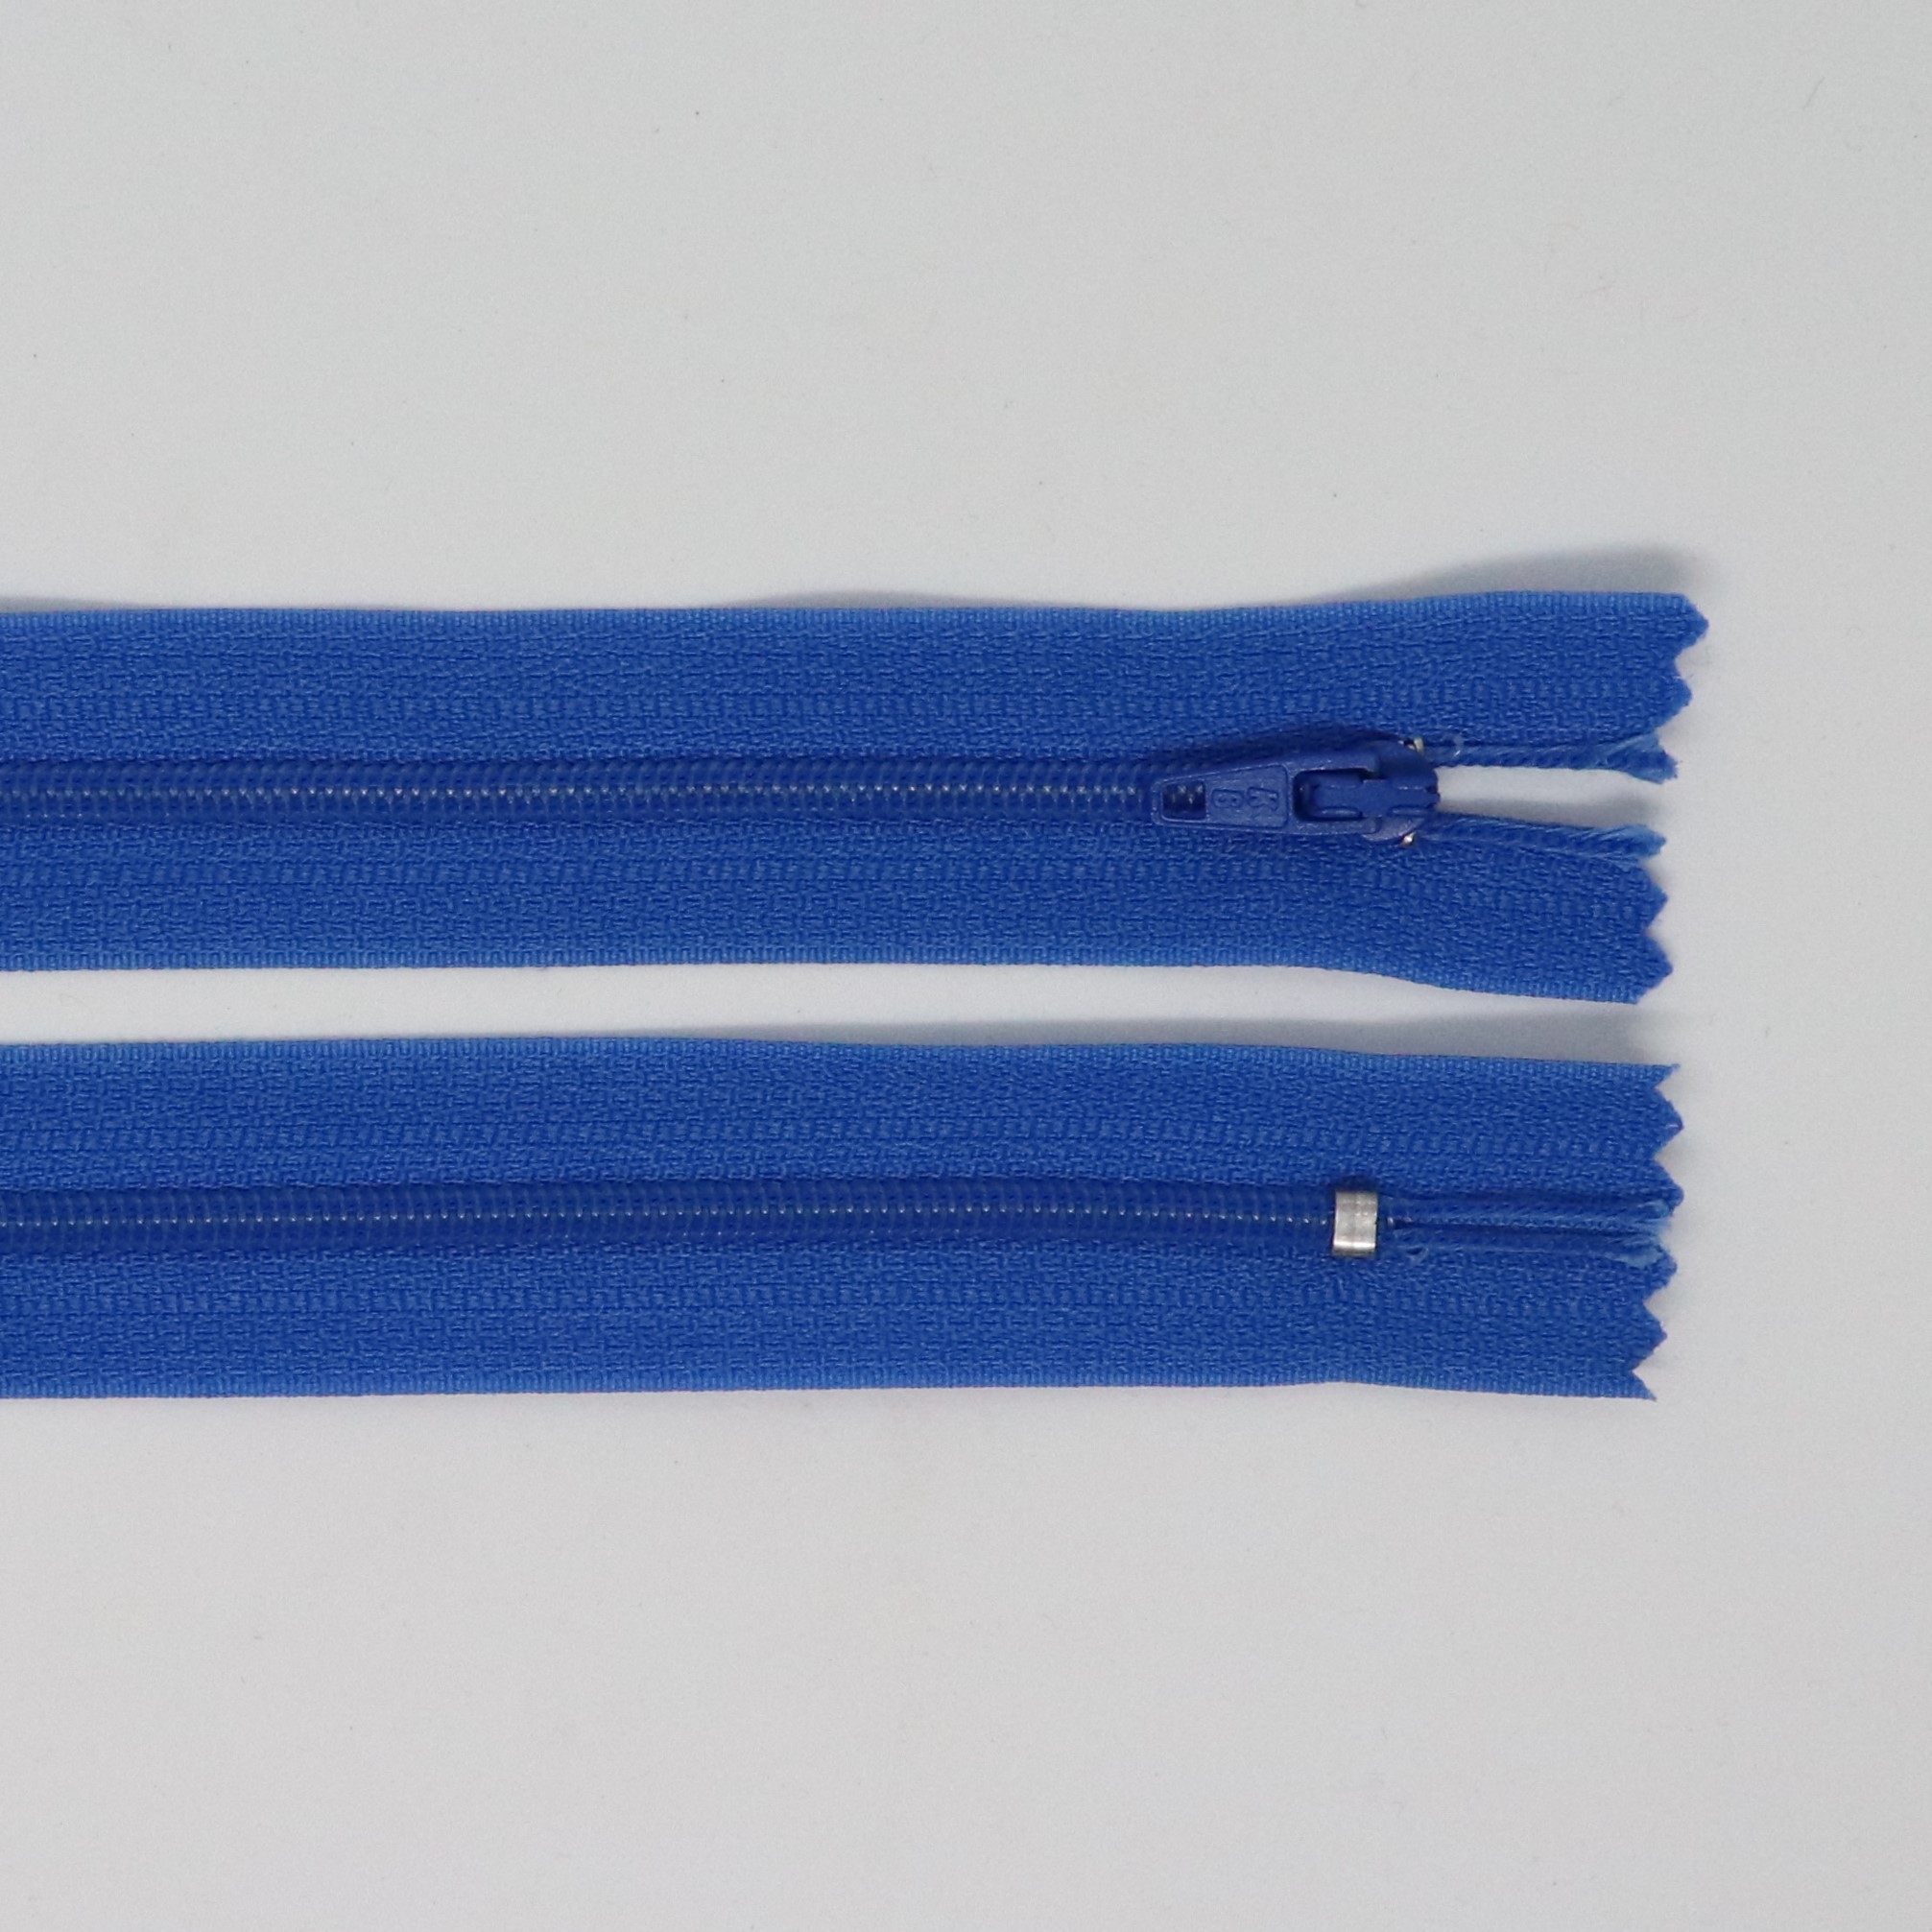 Spirálový zip, šíøe 3 mm, délka 45 cm, modrá - zvìtšit obrázek